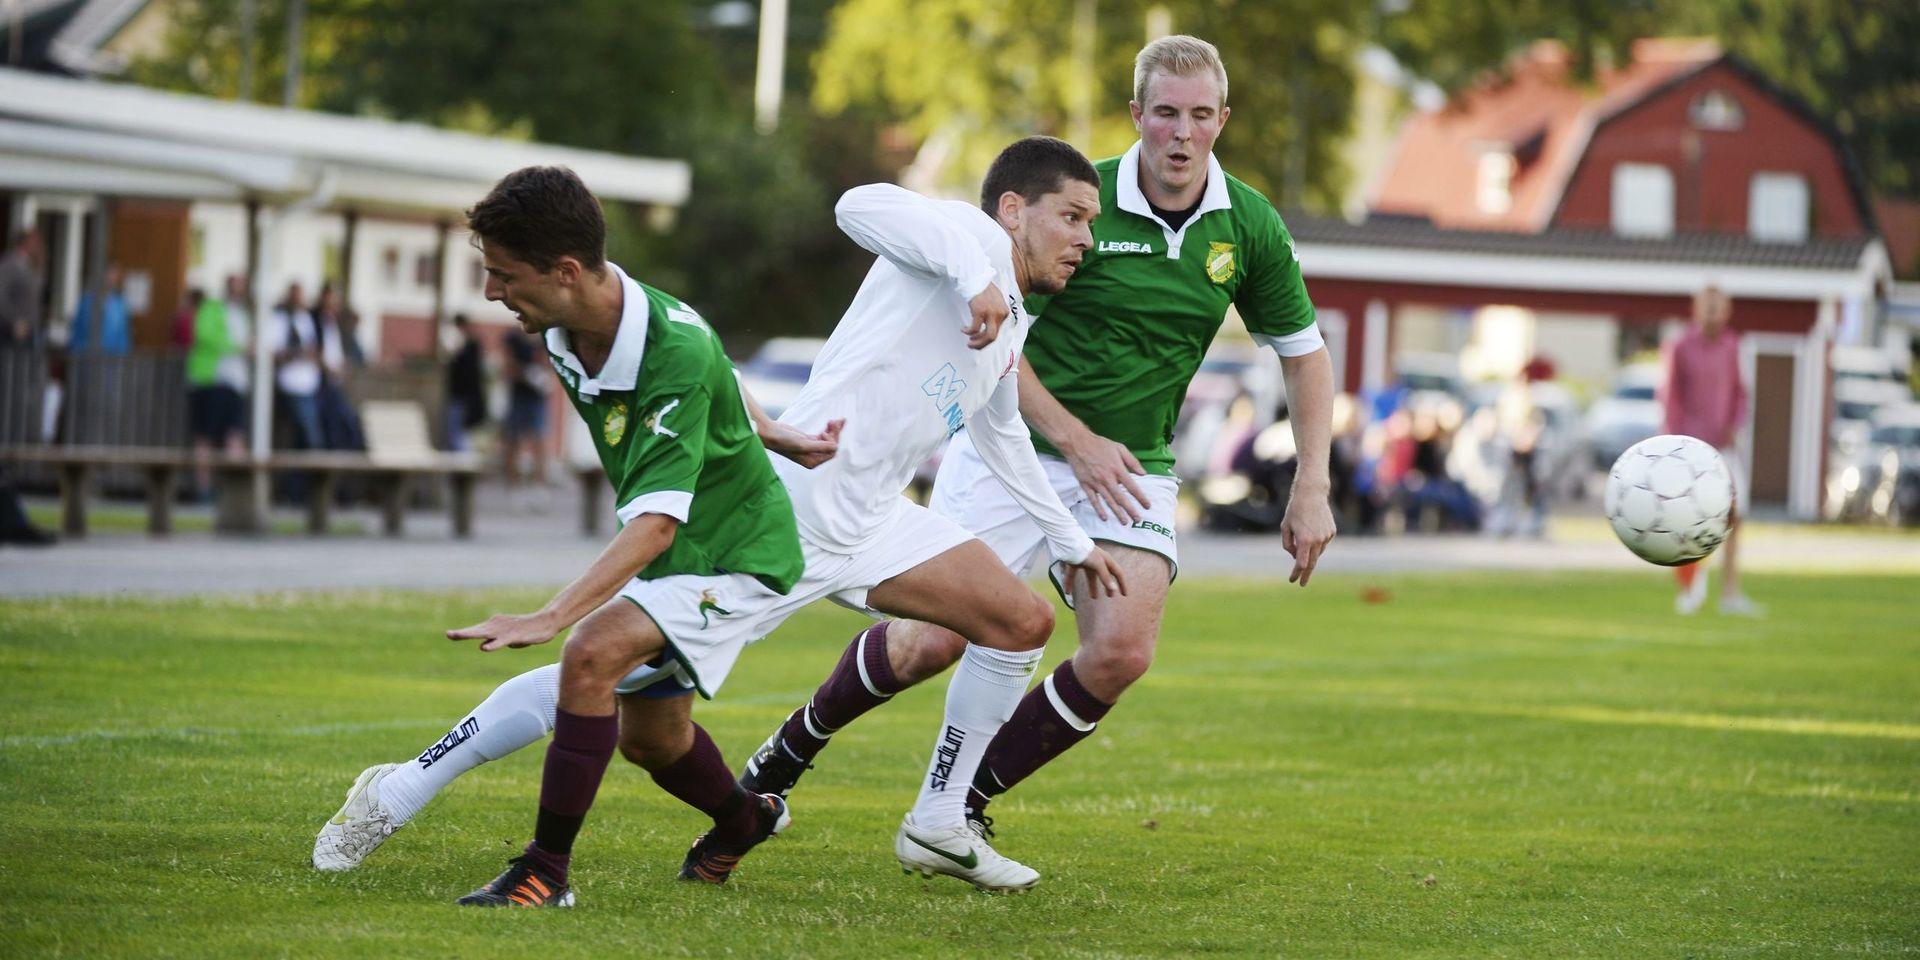 I Skåne, Bohuslän och Dalsland har starten för småklubbsfotbollen skjutits upp till den 1 augusti på grund av coronapandemin. Men i Halland är det fortfarande den 8 juni som gäller för Oskarström, Örnia och alla de andra föreningarna.